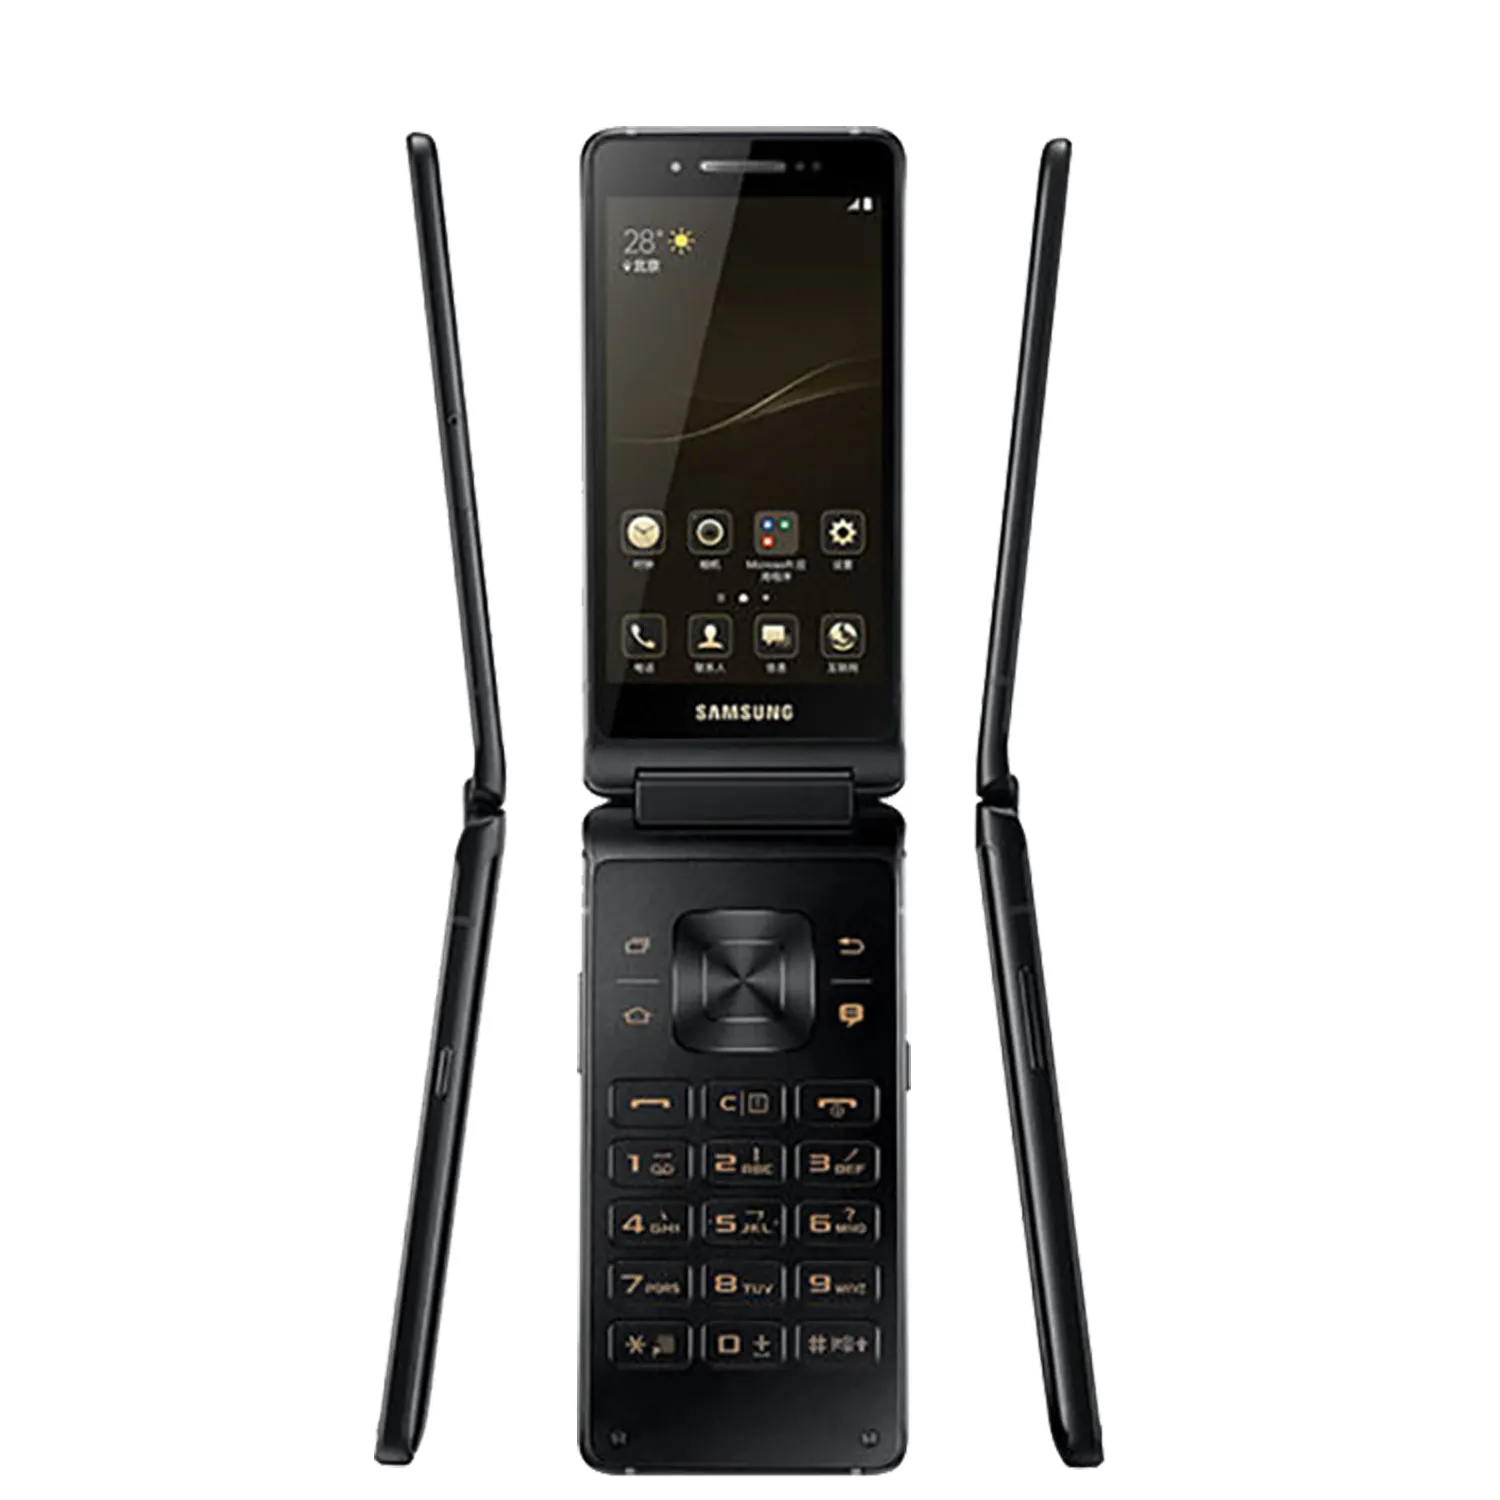 Samsung lideri 8 G9298 4G LTE cep telefonu için 4.2 inç AMOLED akıllı telefon Snapdragon 821 Quad Core Flip Android cep telefonu